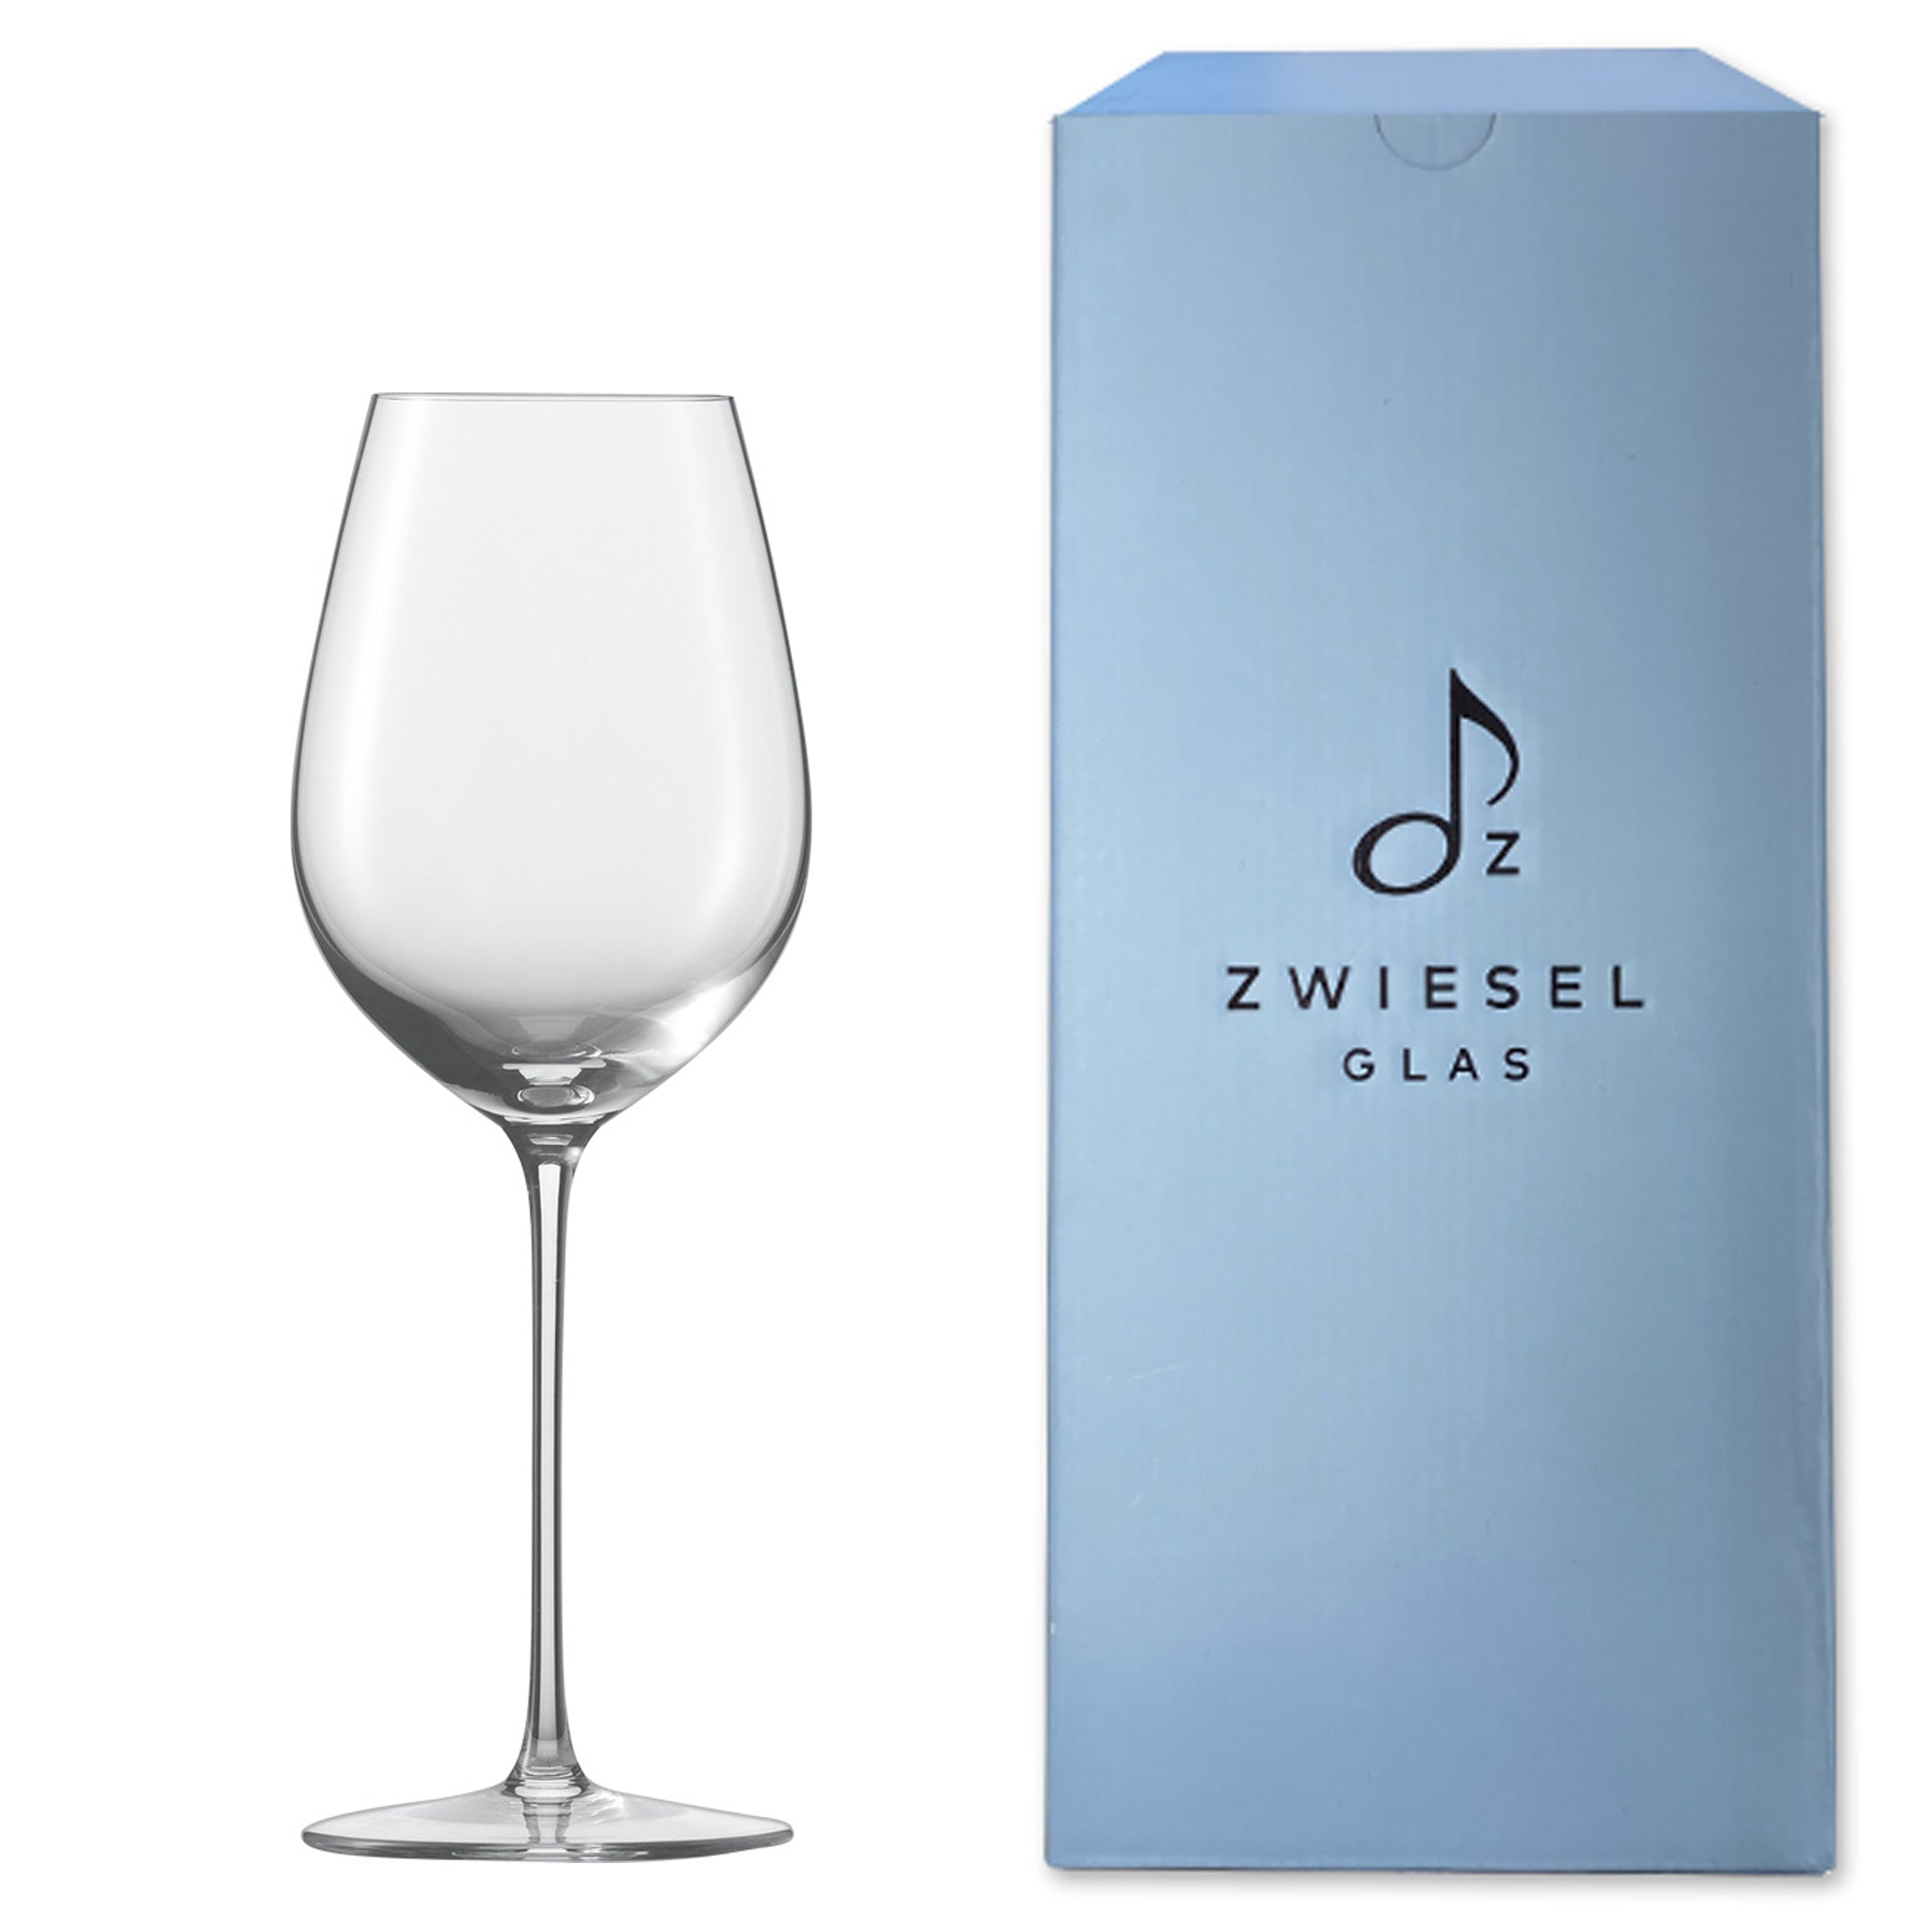 白ワイン用のグラスをお持ちですか。 | ツヴィーゼル公式サイト